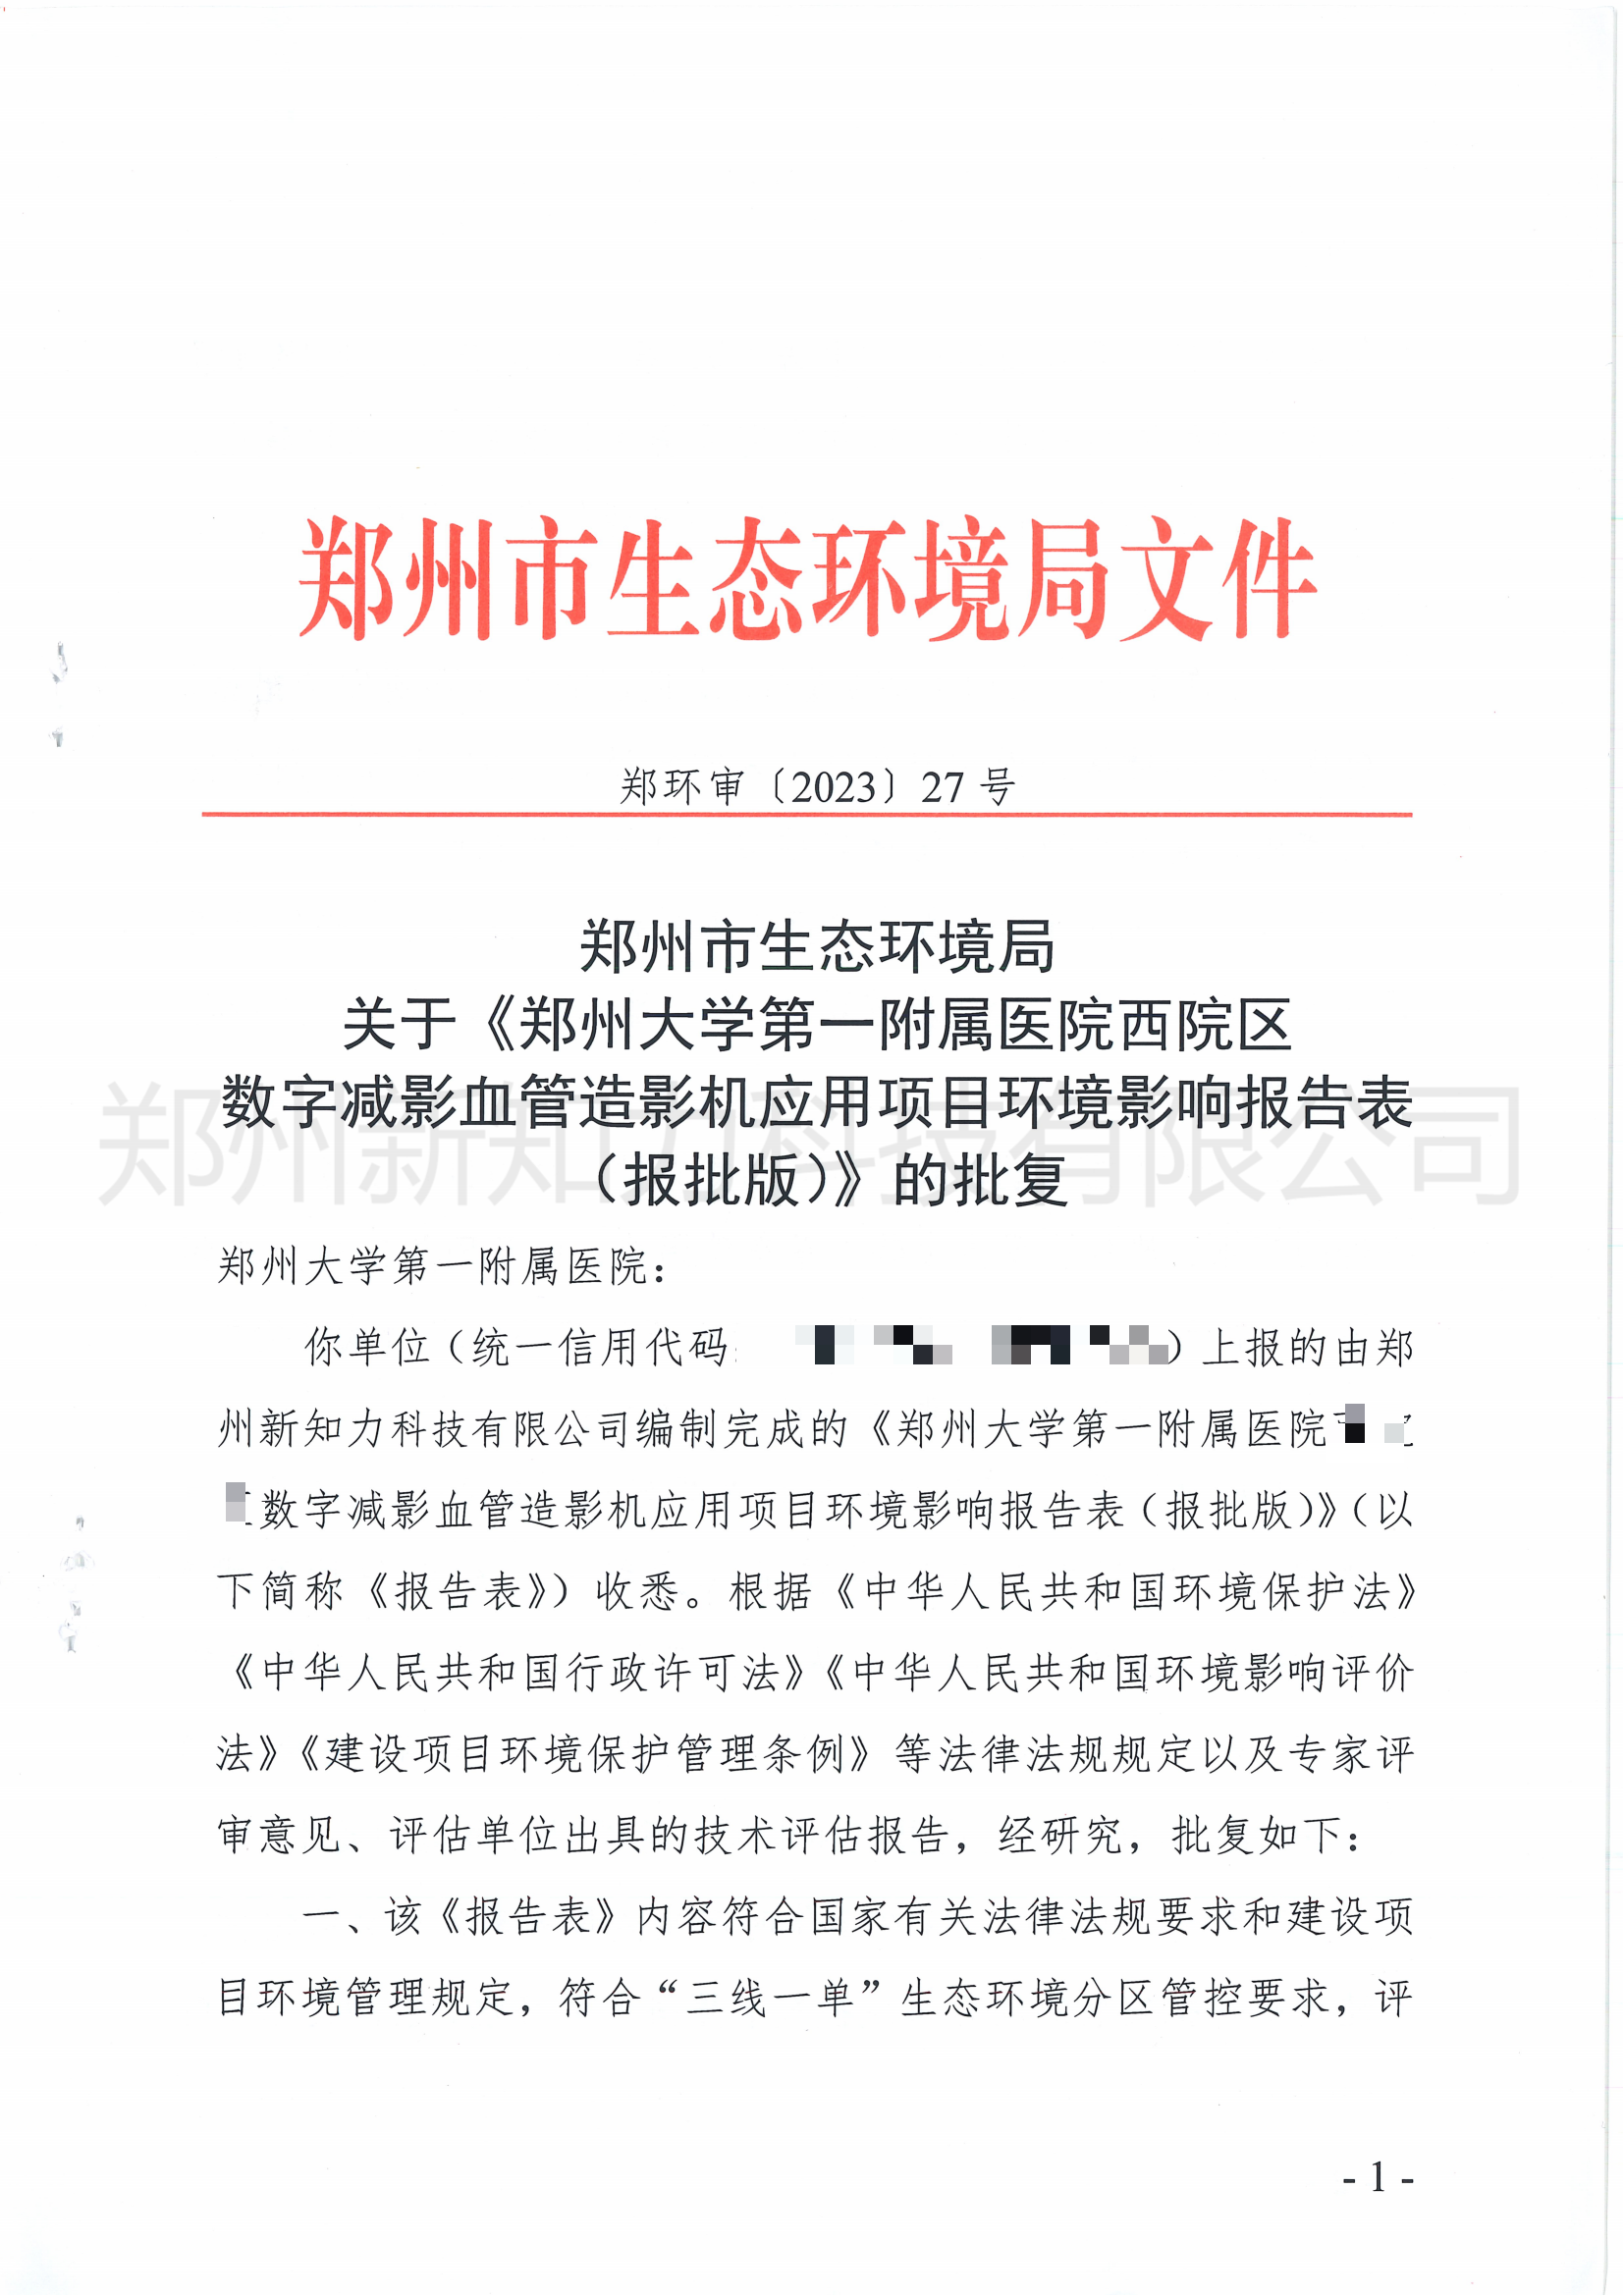 郑州大学第一附属医院西院区数字减影血管造影机应用项目环评批复(1)_00.png